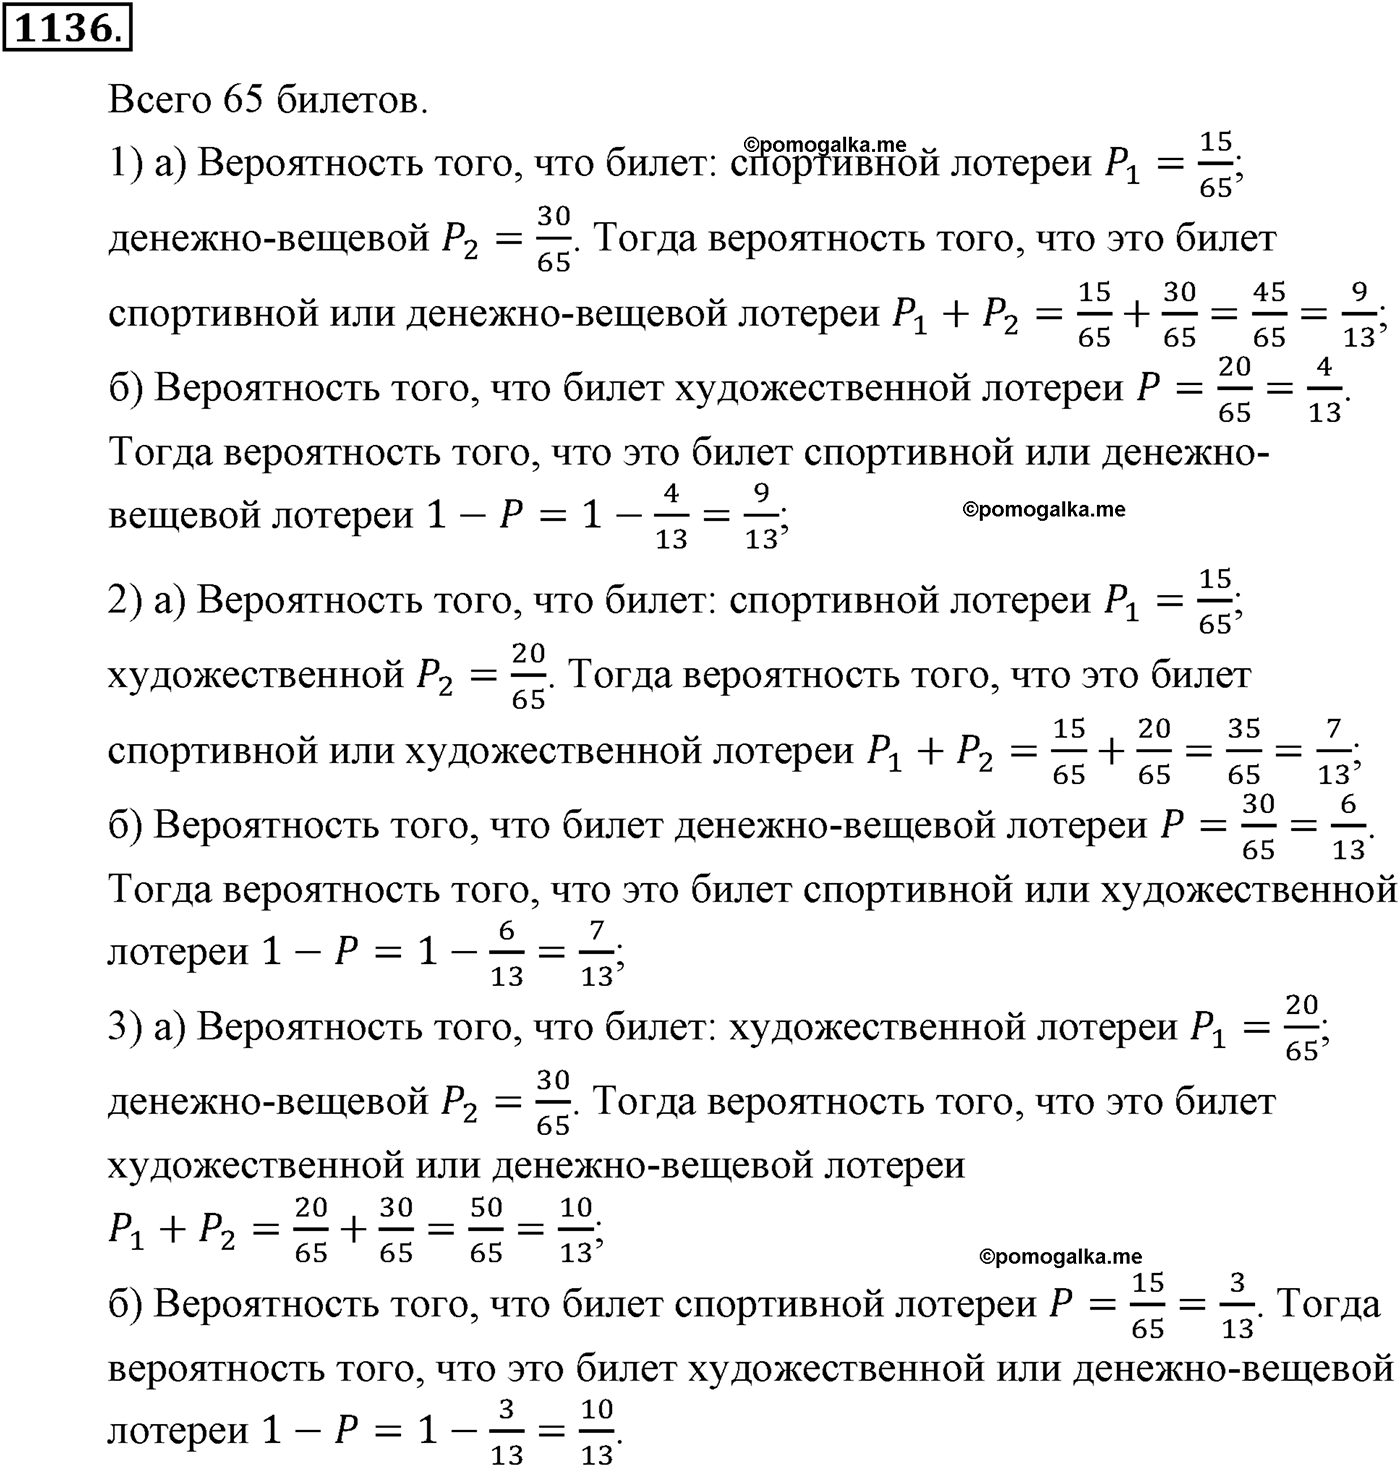 разбор задачи №1136 по алгебре за 10-11 класс из учебника Алимова, Колягина